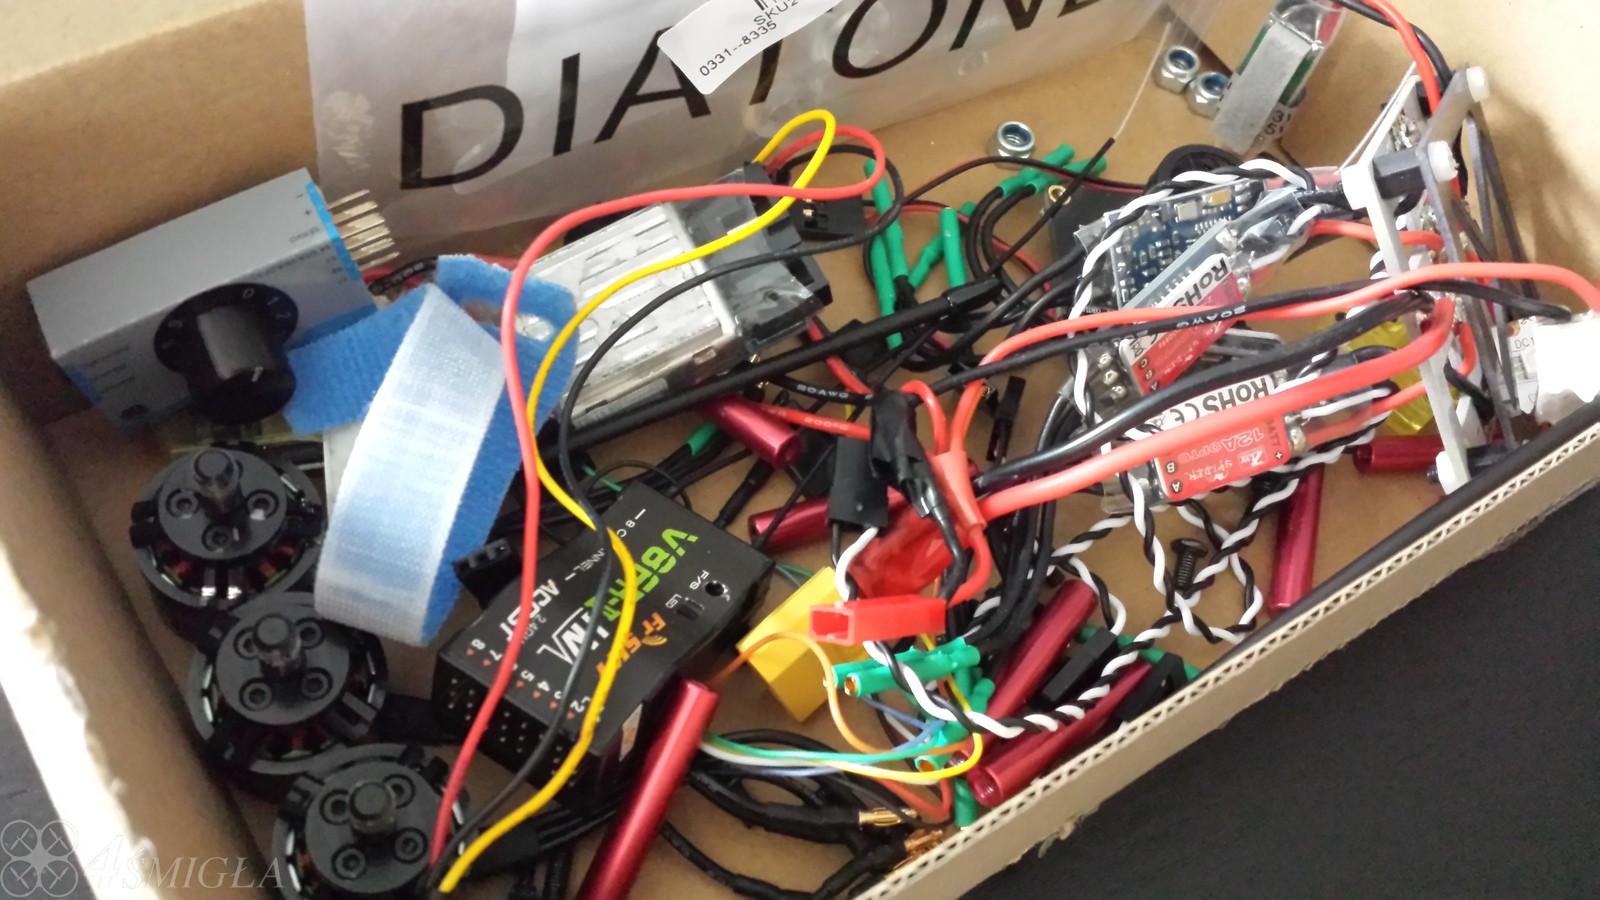 DIY, czyli budujemy własny quadrocopter: Część 0 - Wstęp